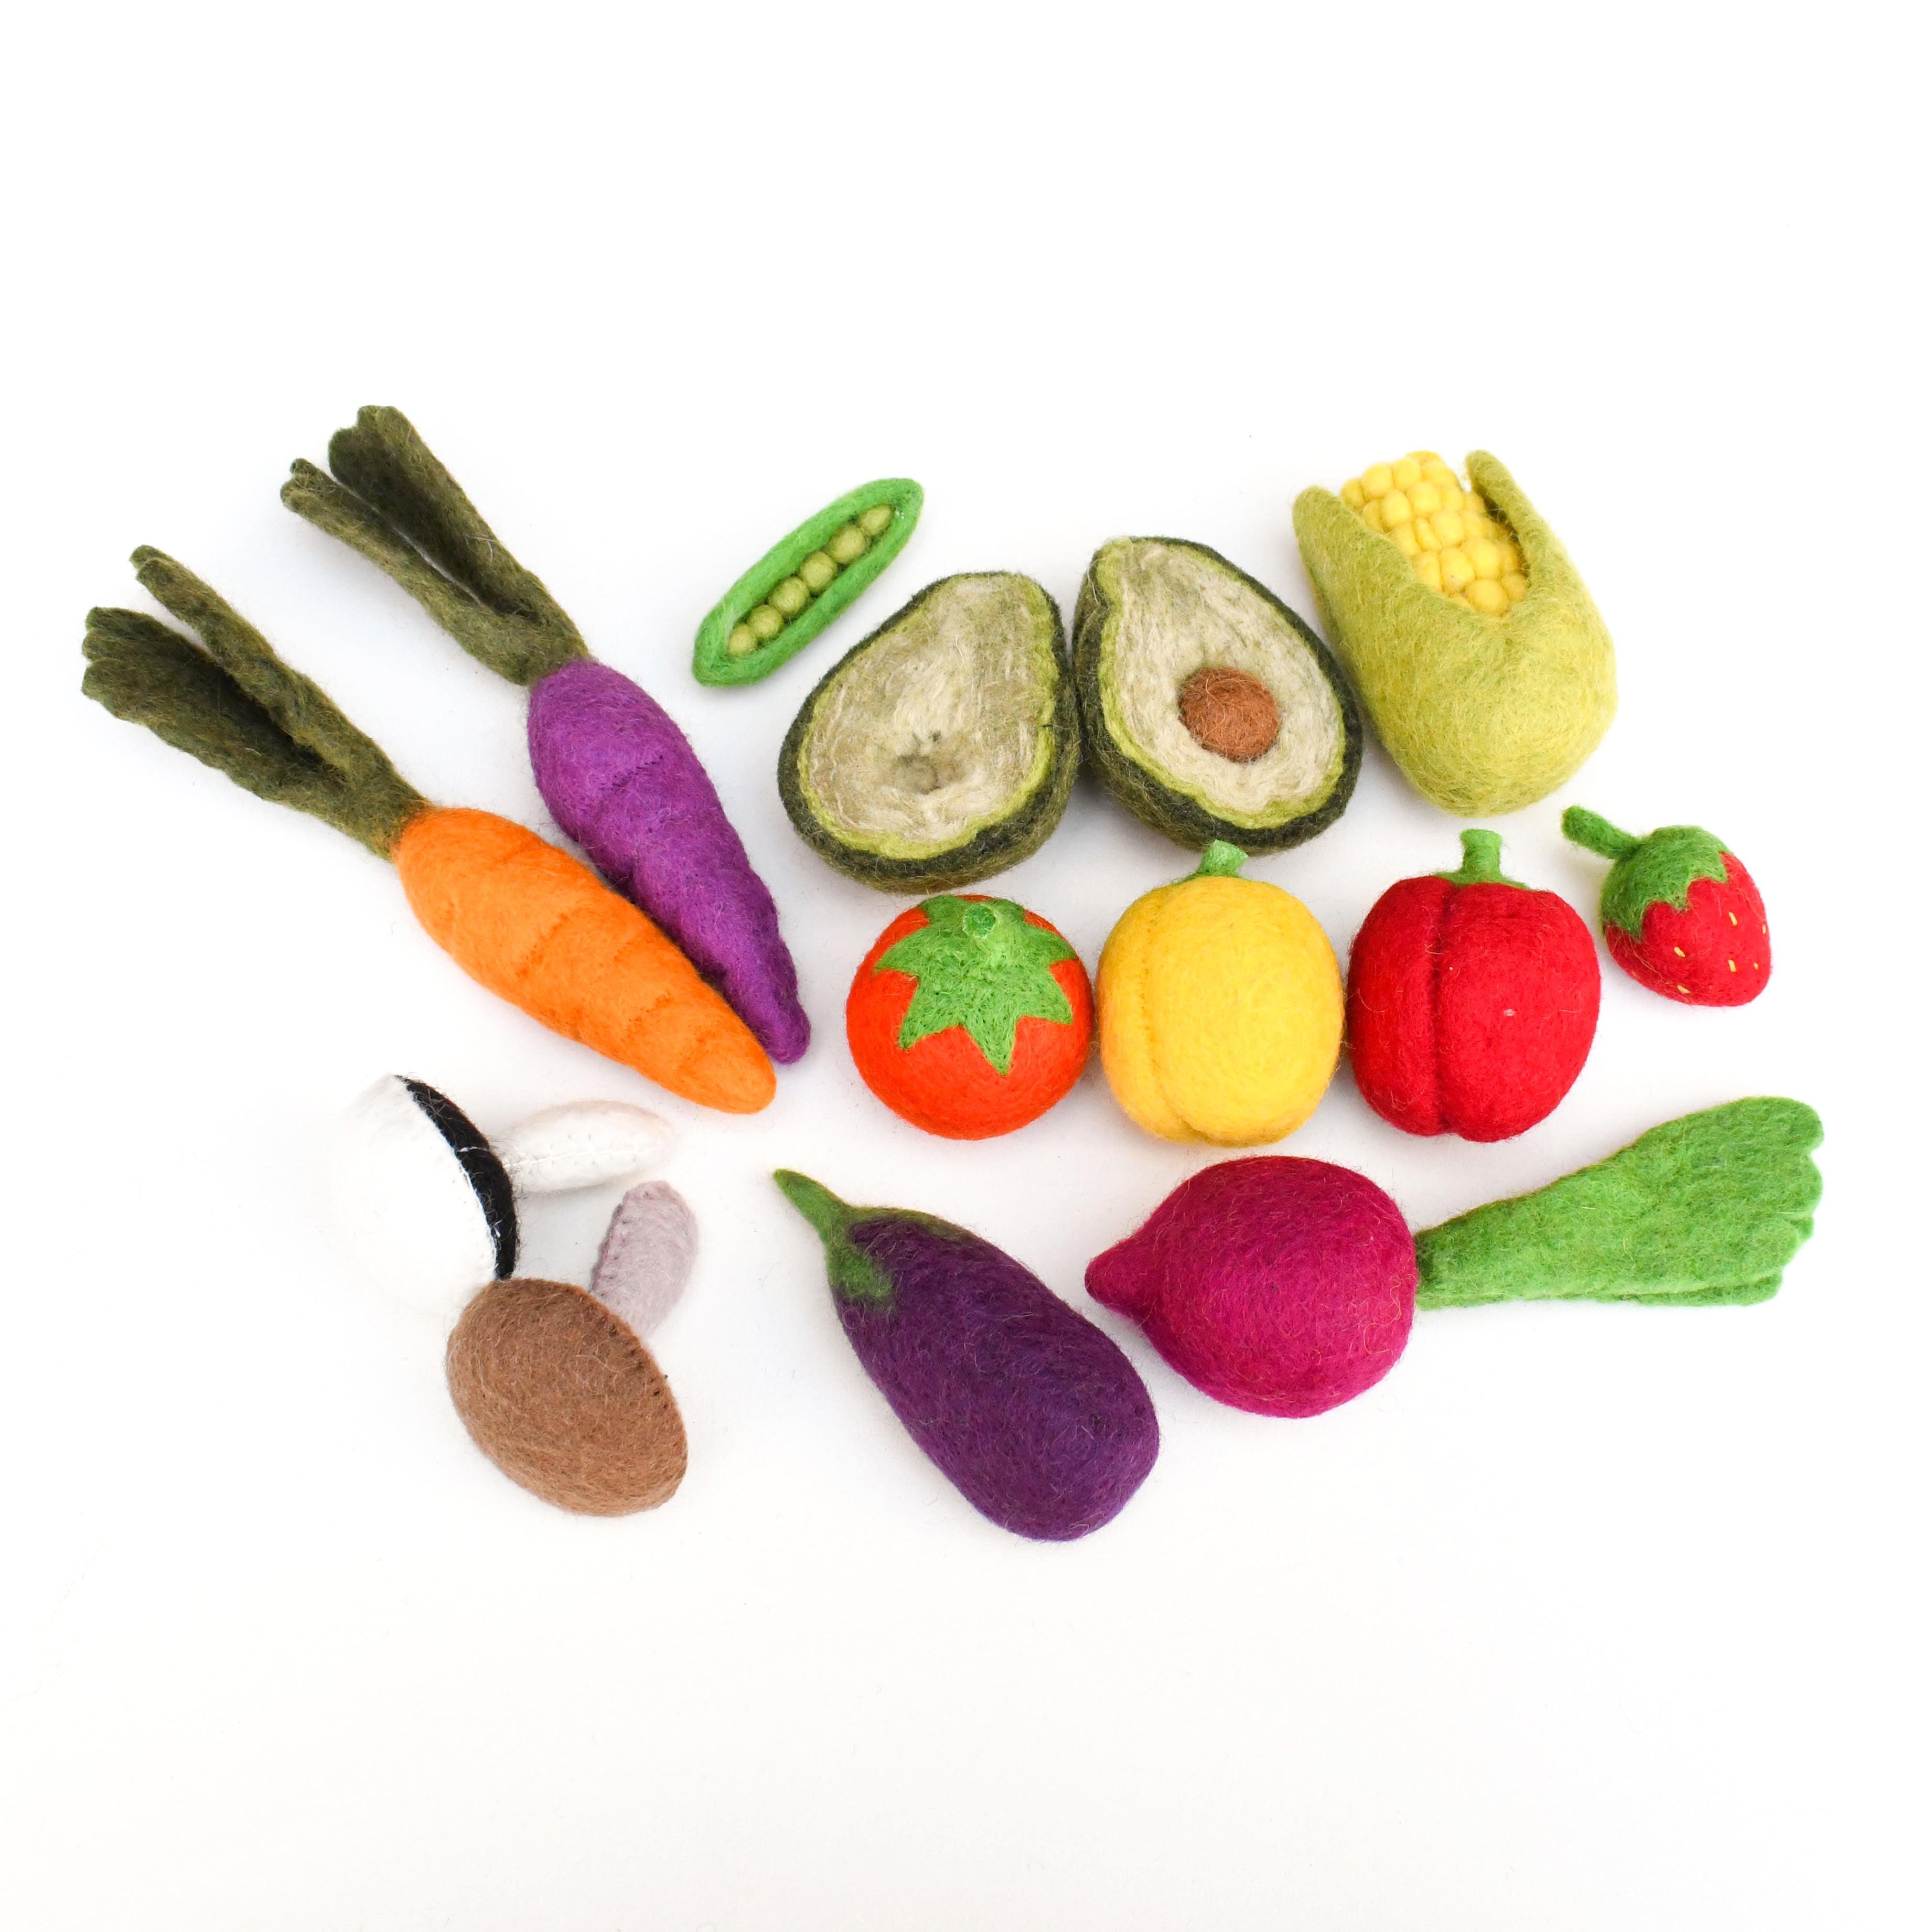 Felt Vegetables and Fruits Set A - 14 pieces - Tara Treasures